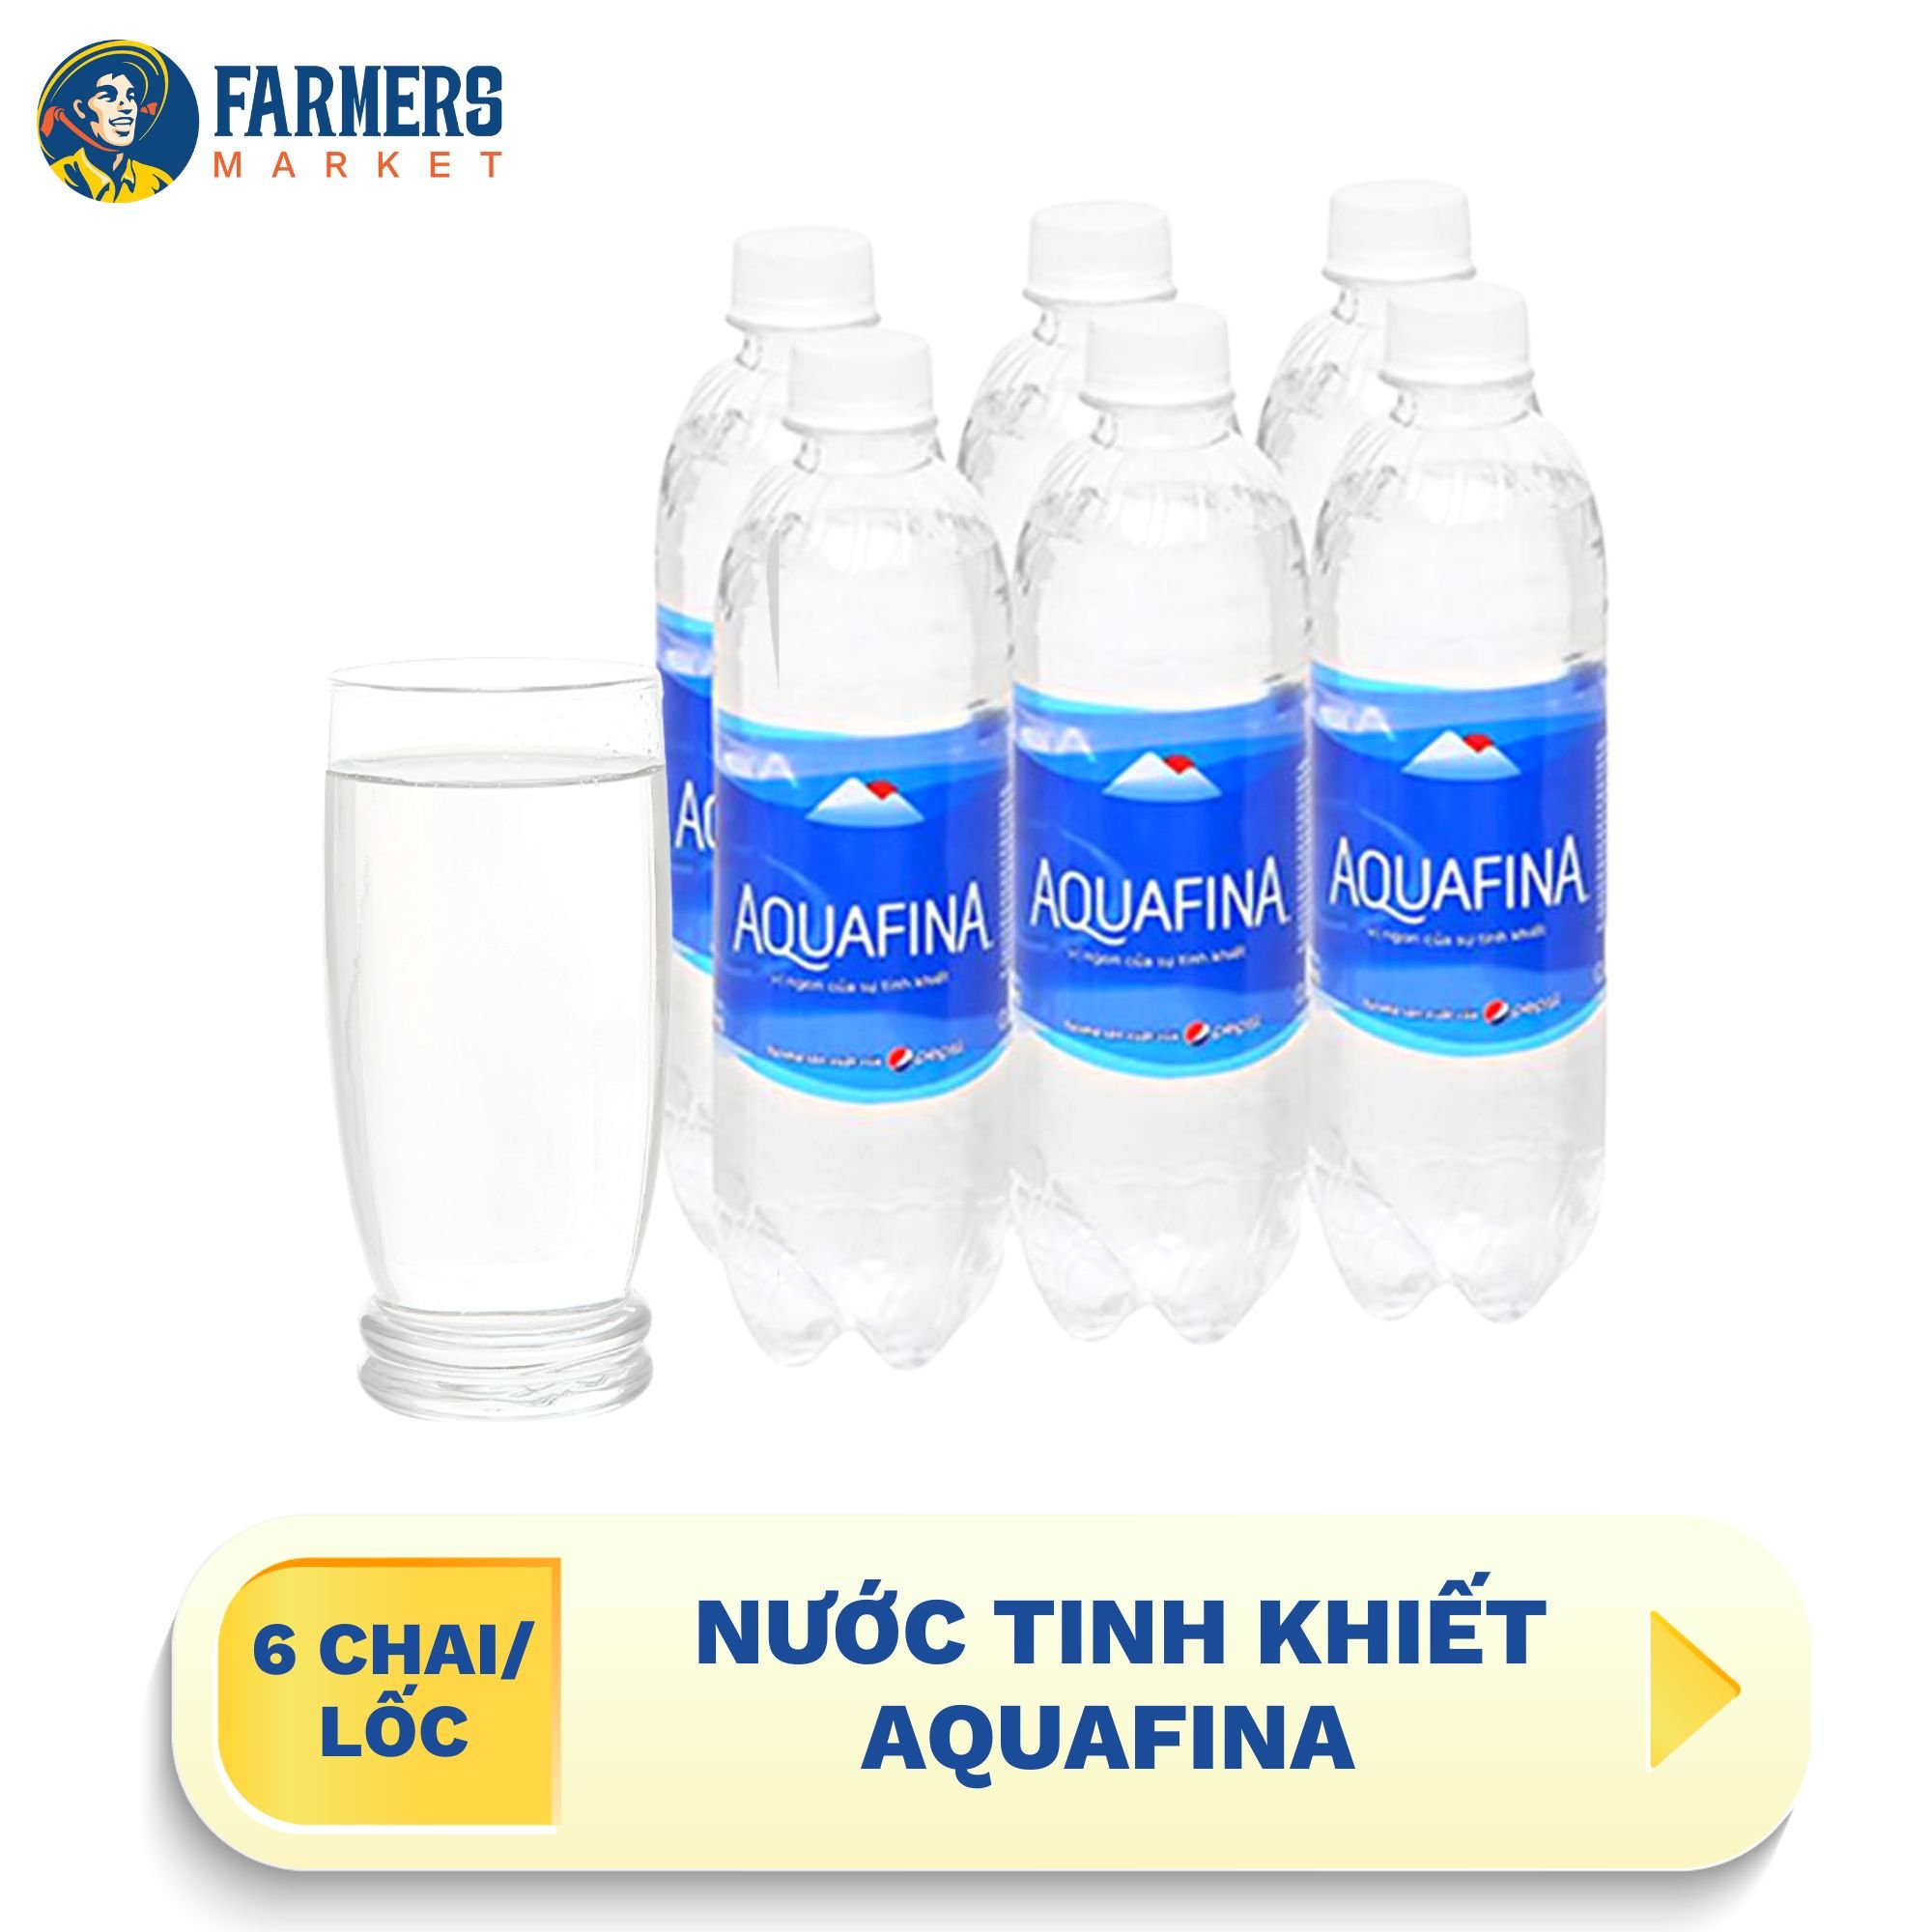 Giao hàng toàn quốc  Lốc 6 chai  Nước tinh khiết Aquafina - Chai 500ml